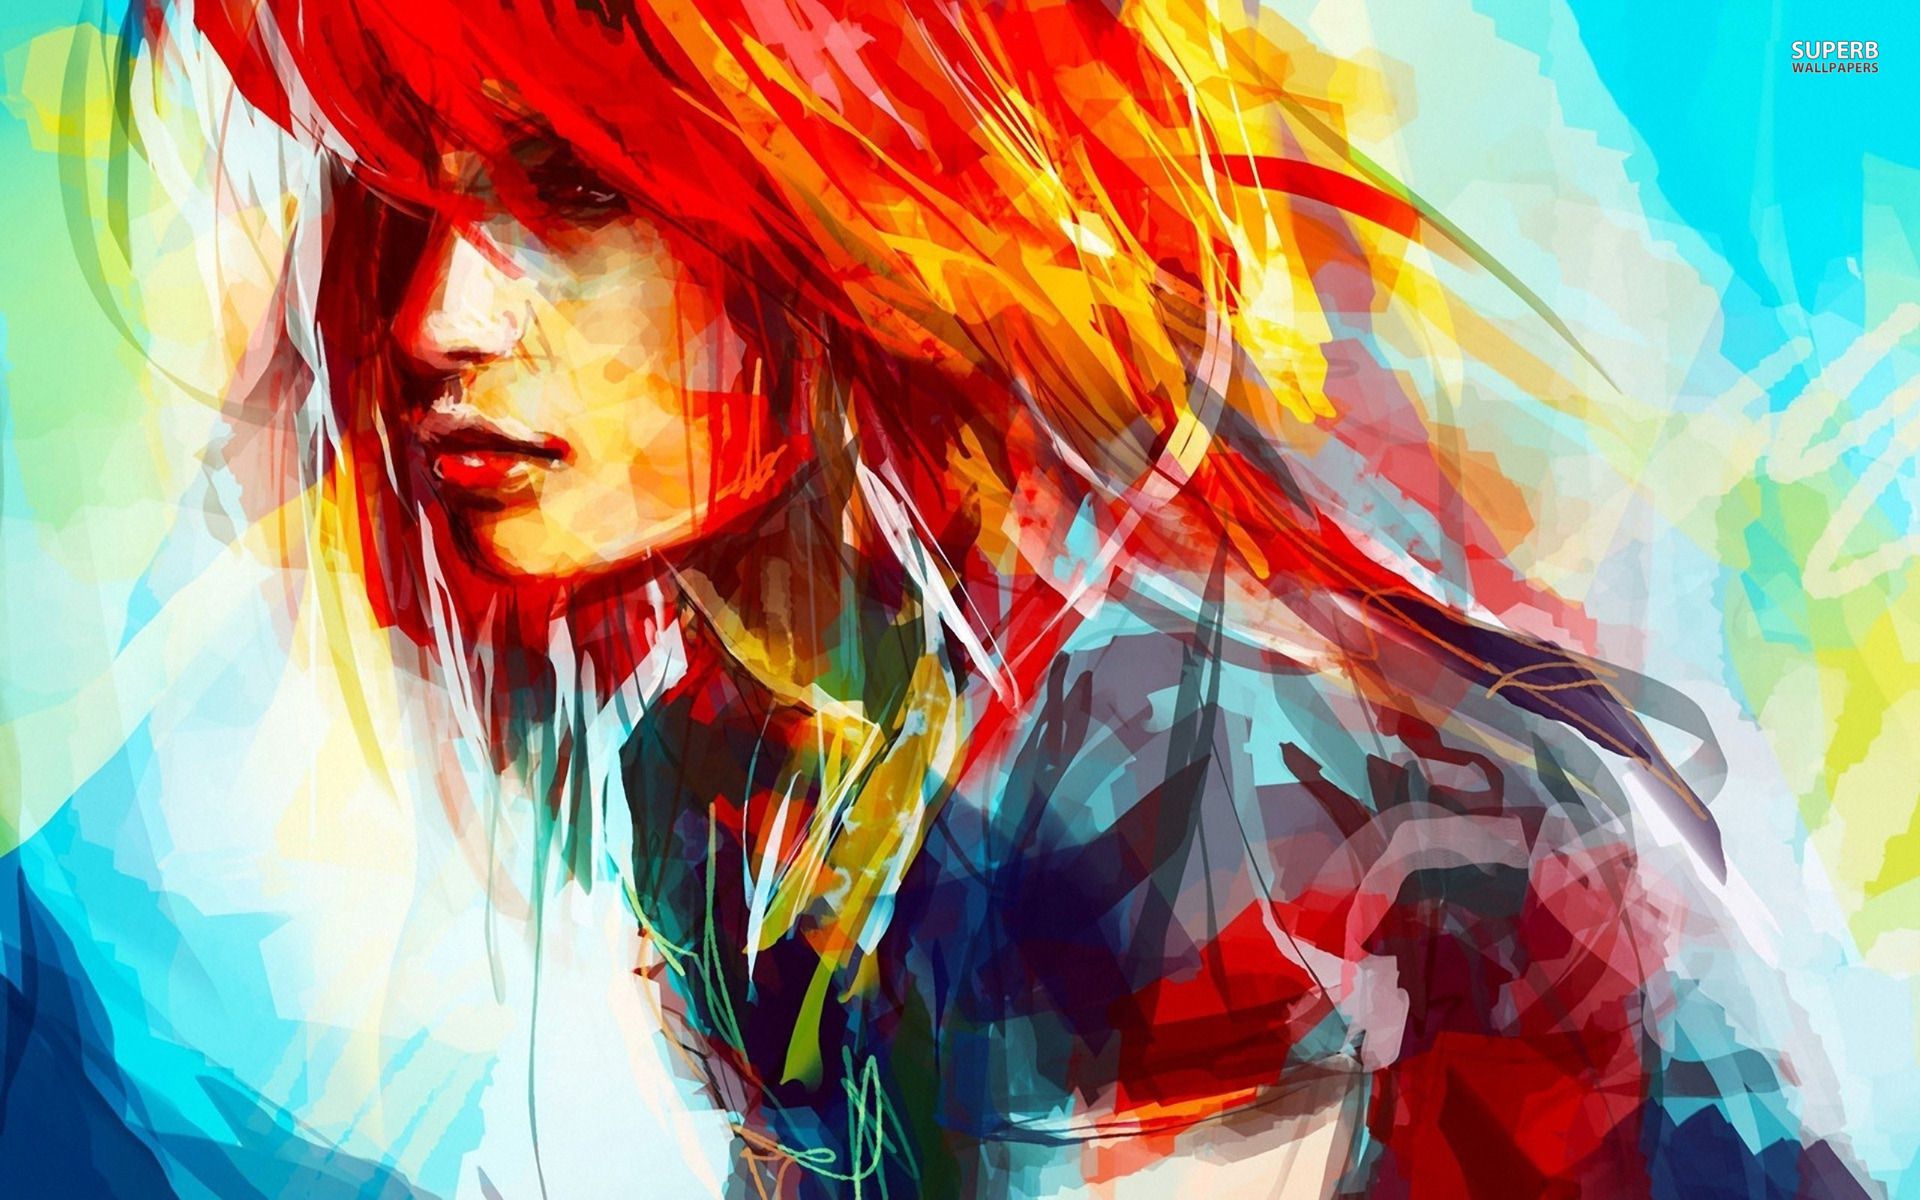 소녀 그림 벽지,머리,빨간,삽화,cg 삽화,빨강 머리